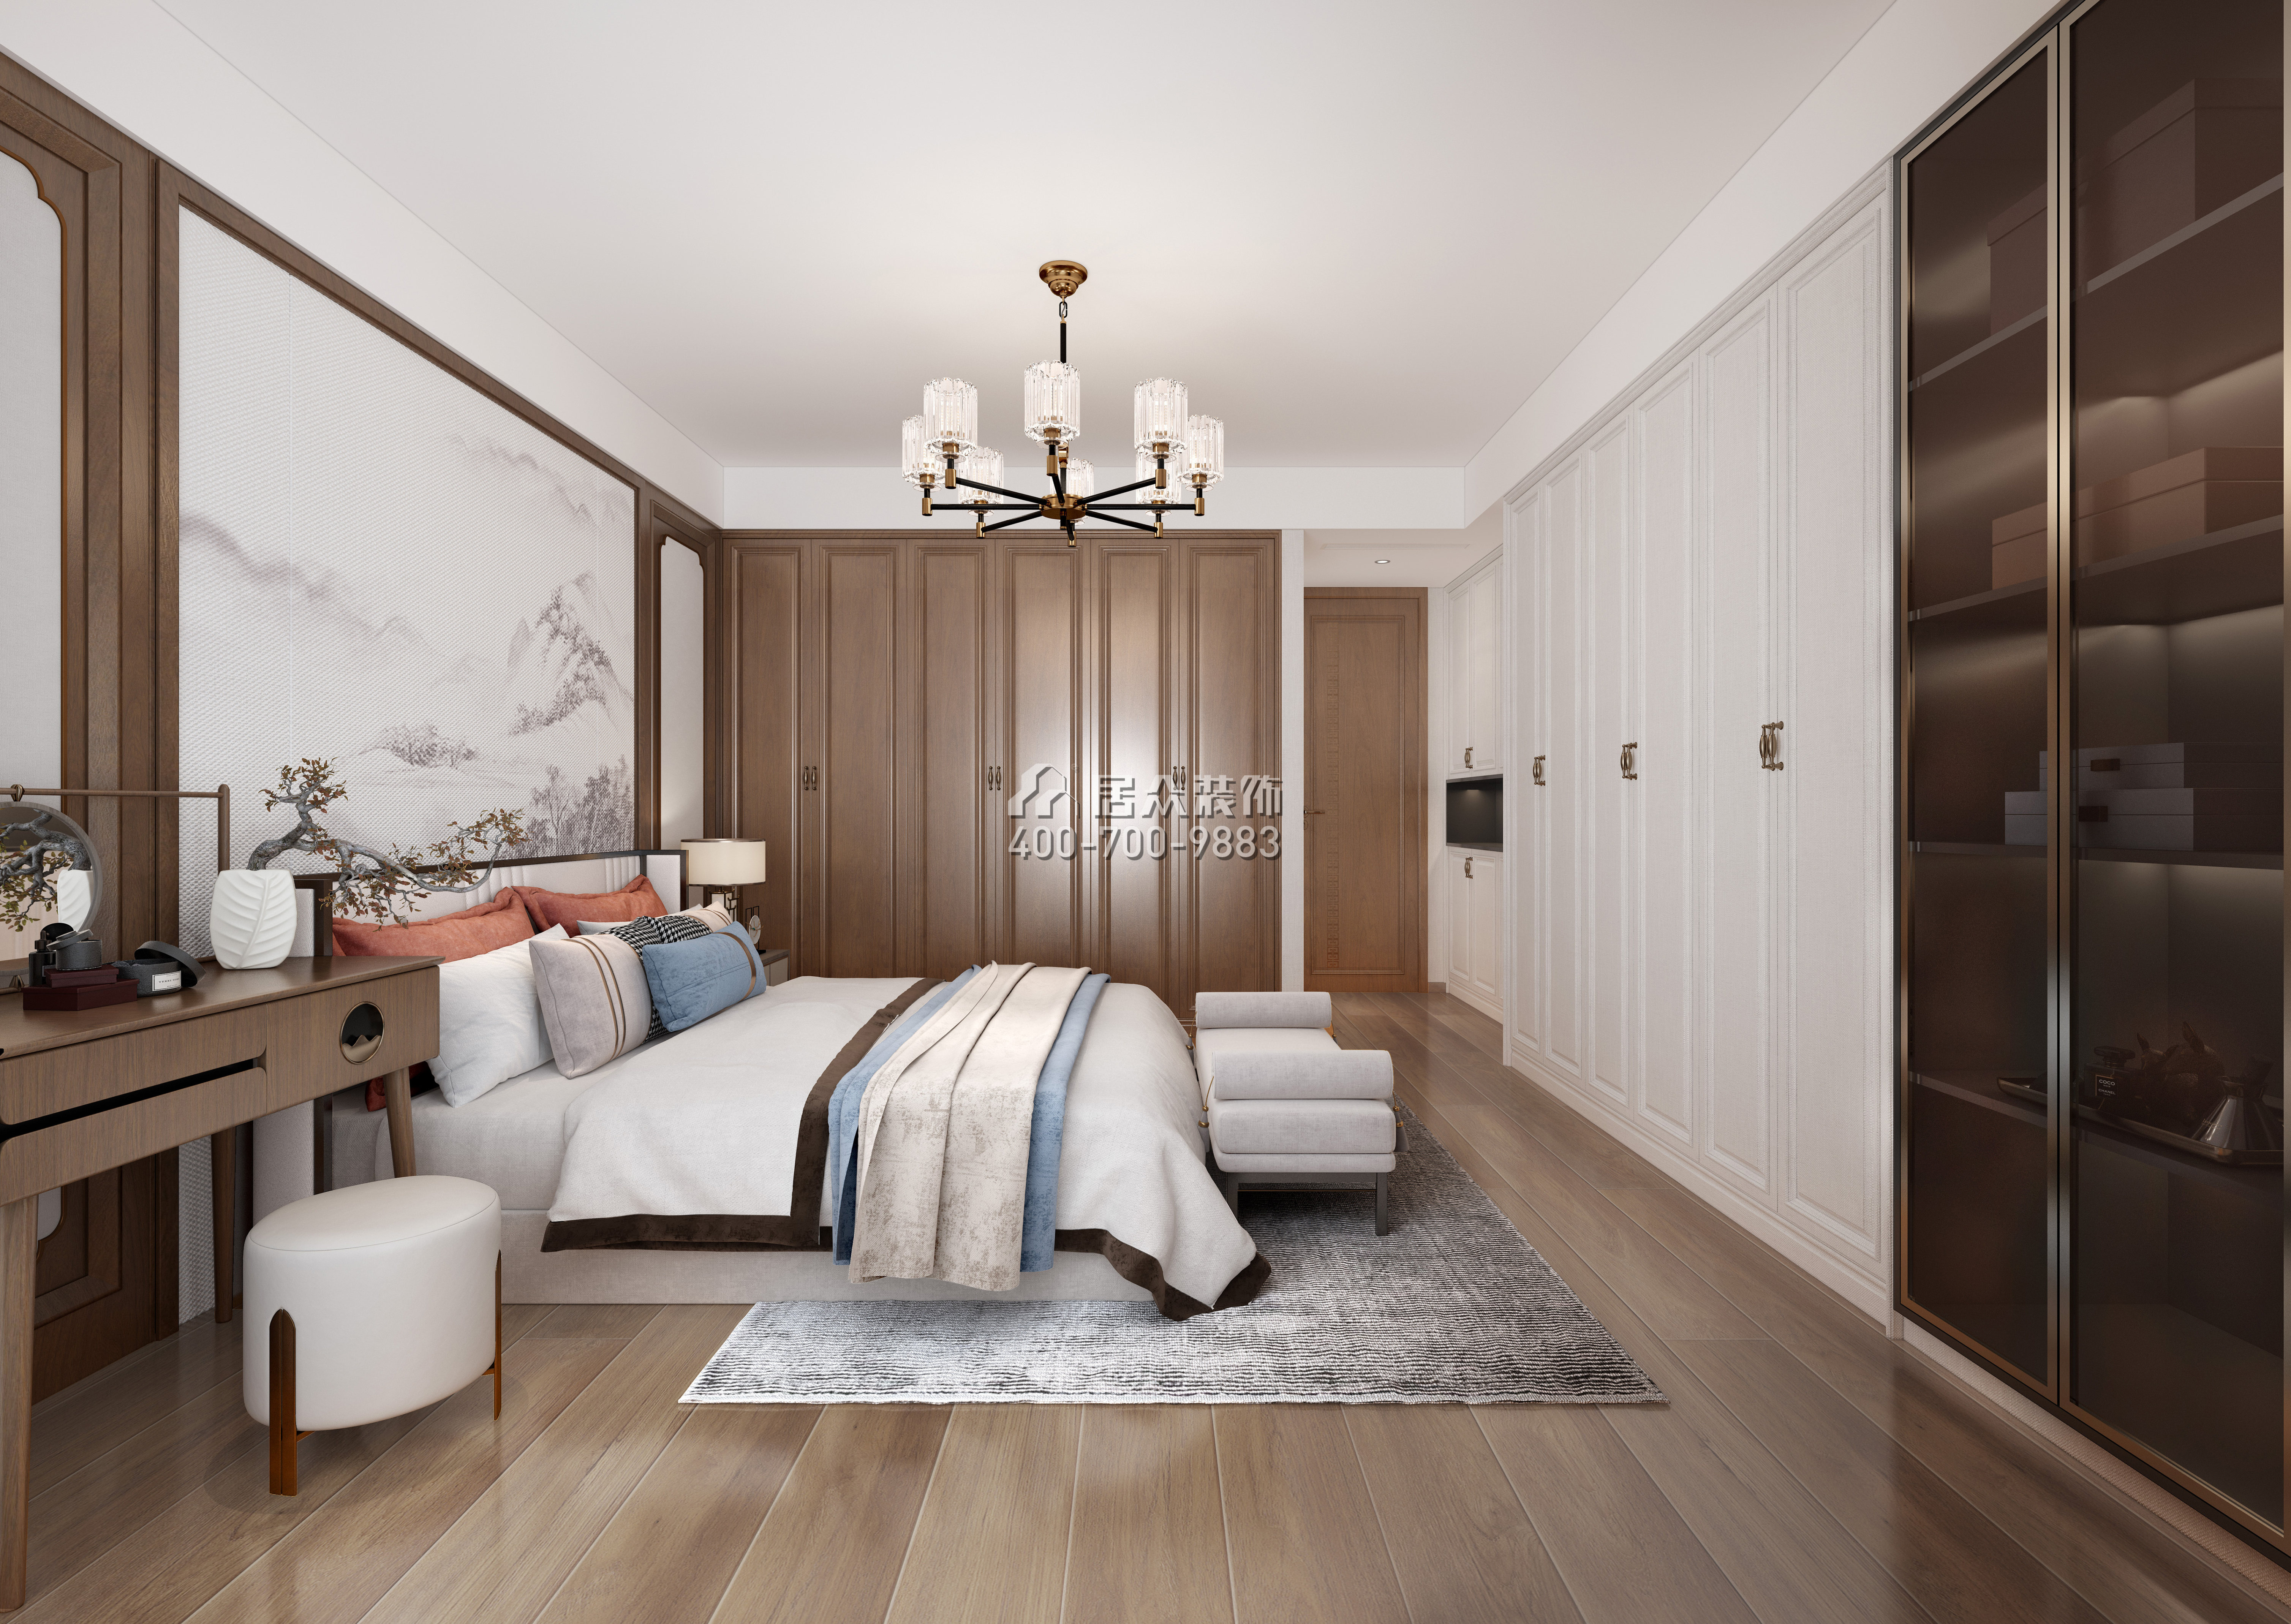 新天國際名苑150平方米中式風格平層戶型臥室裝修效果圖